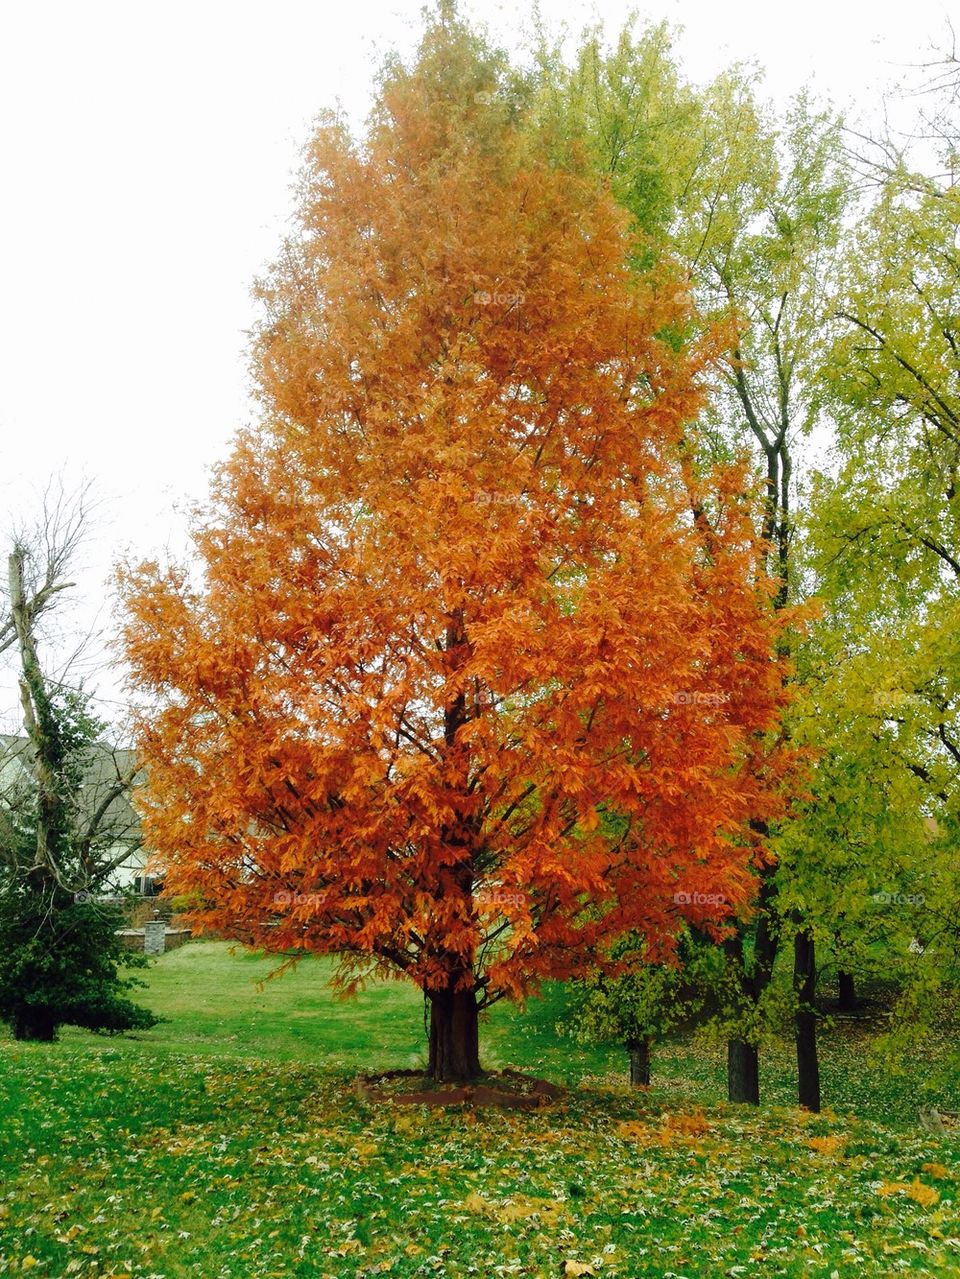 Autumn in Southern Illinois 